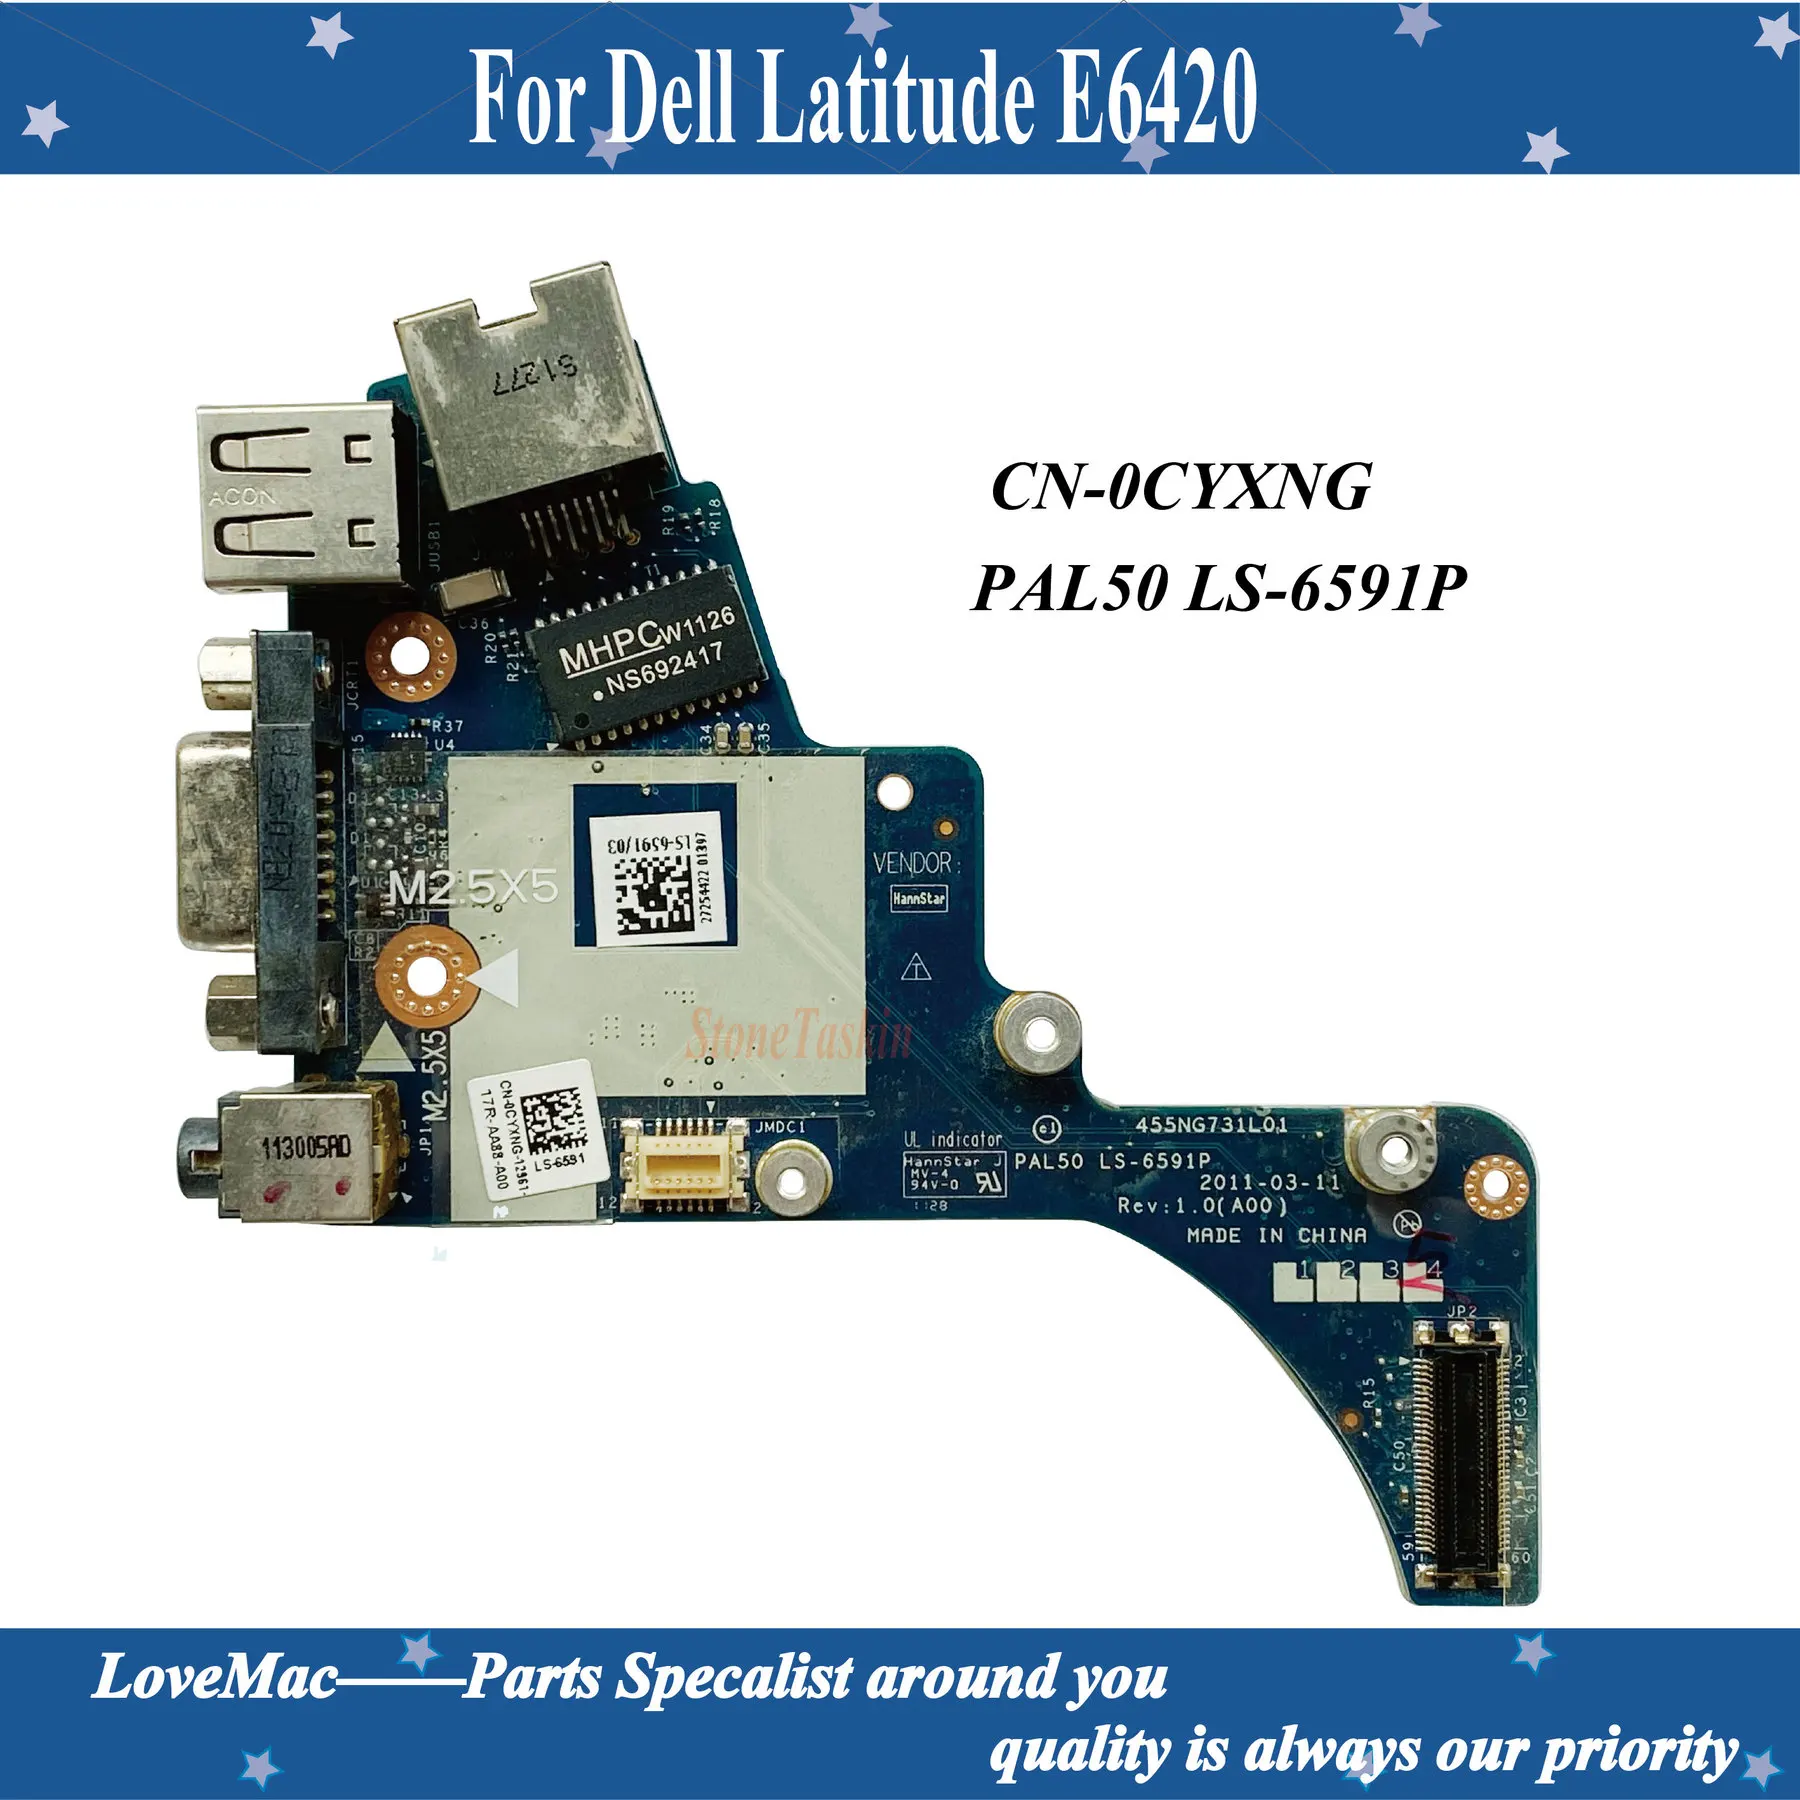 

High quality Genuine For Dell Latitude E6420 Audio Ethernet USB VGA Port Board CN-0CYXNG 0CYXNG CYXNG PAL50 LS-6591P 100% tested